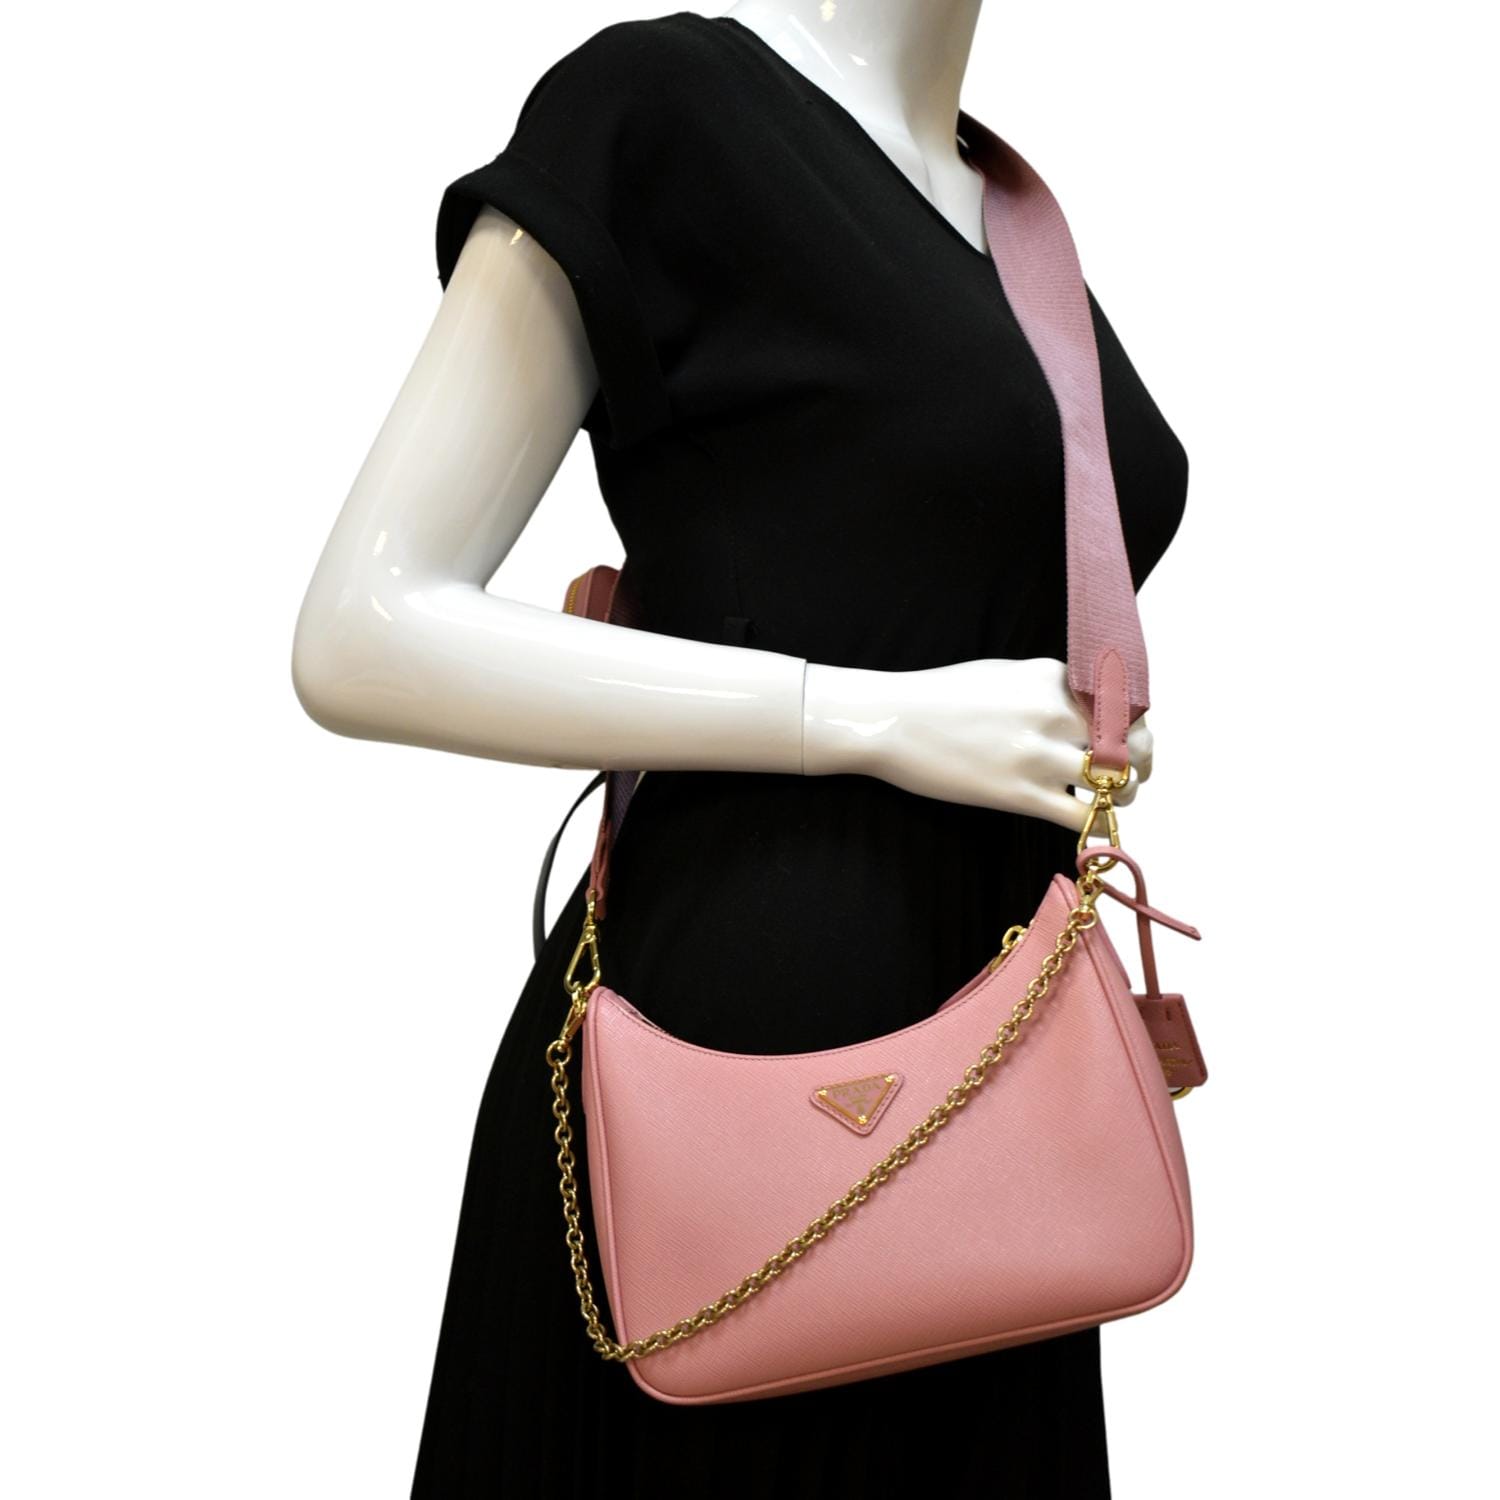 Prada Re-edition 2005 Saffiano Leather Bag